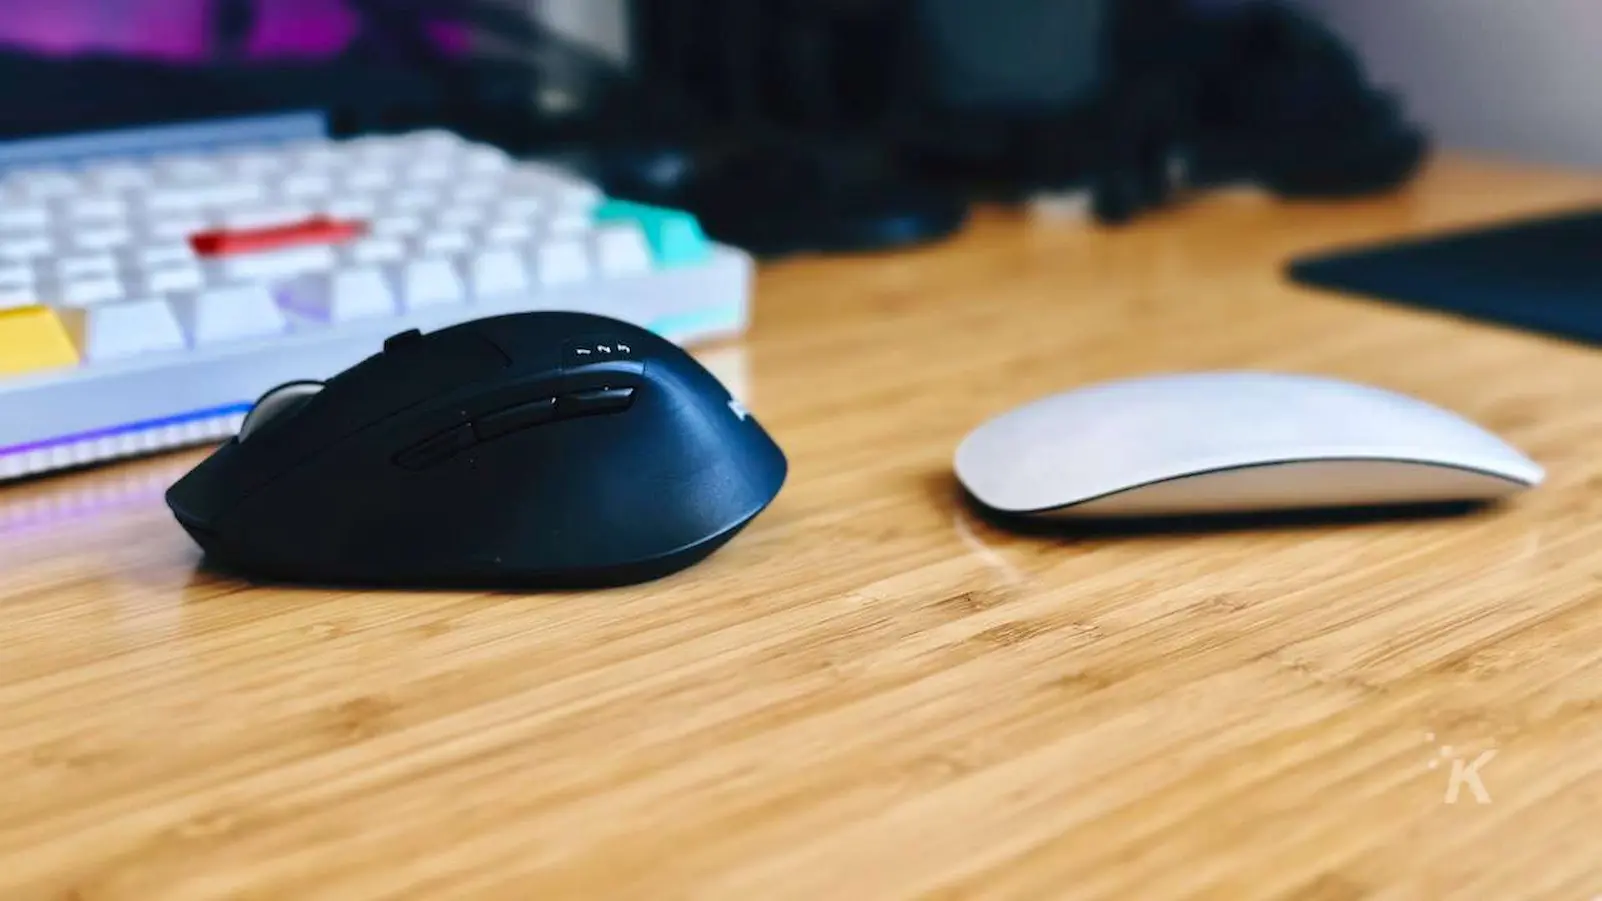 imagine alăturată a mouse-ului Apple Magic vs. mouse-ului logitech m720 pe birou